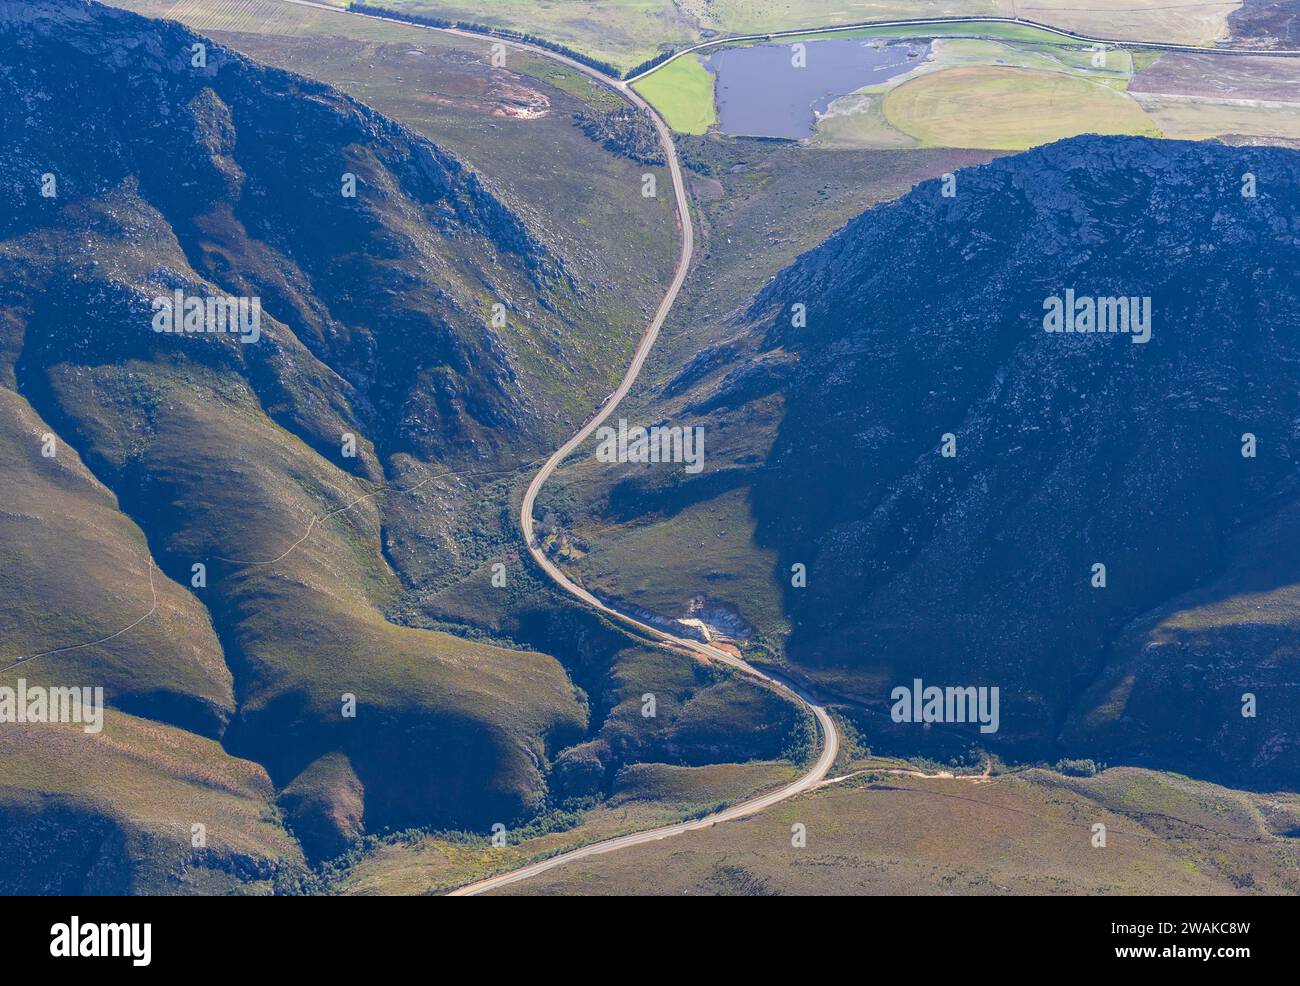 Photographie aérienne d'une route sinueuse traversant les montagnes du Cap Fold à l'ouest de George, dans la province du Cap occidental en Afrique du Sud. Banque D'Images